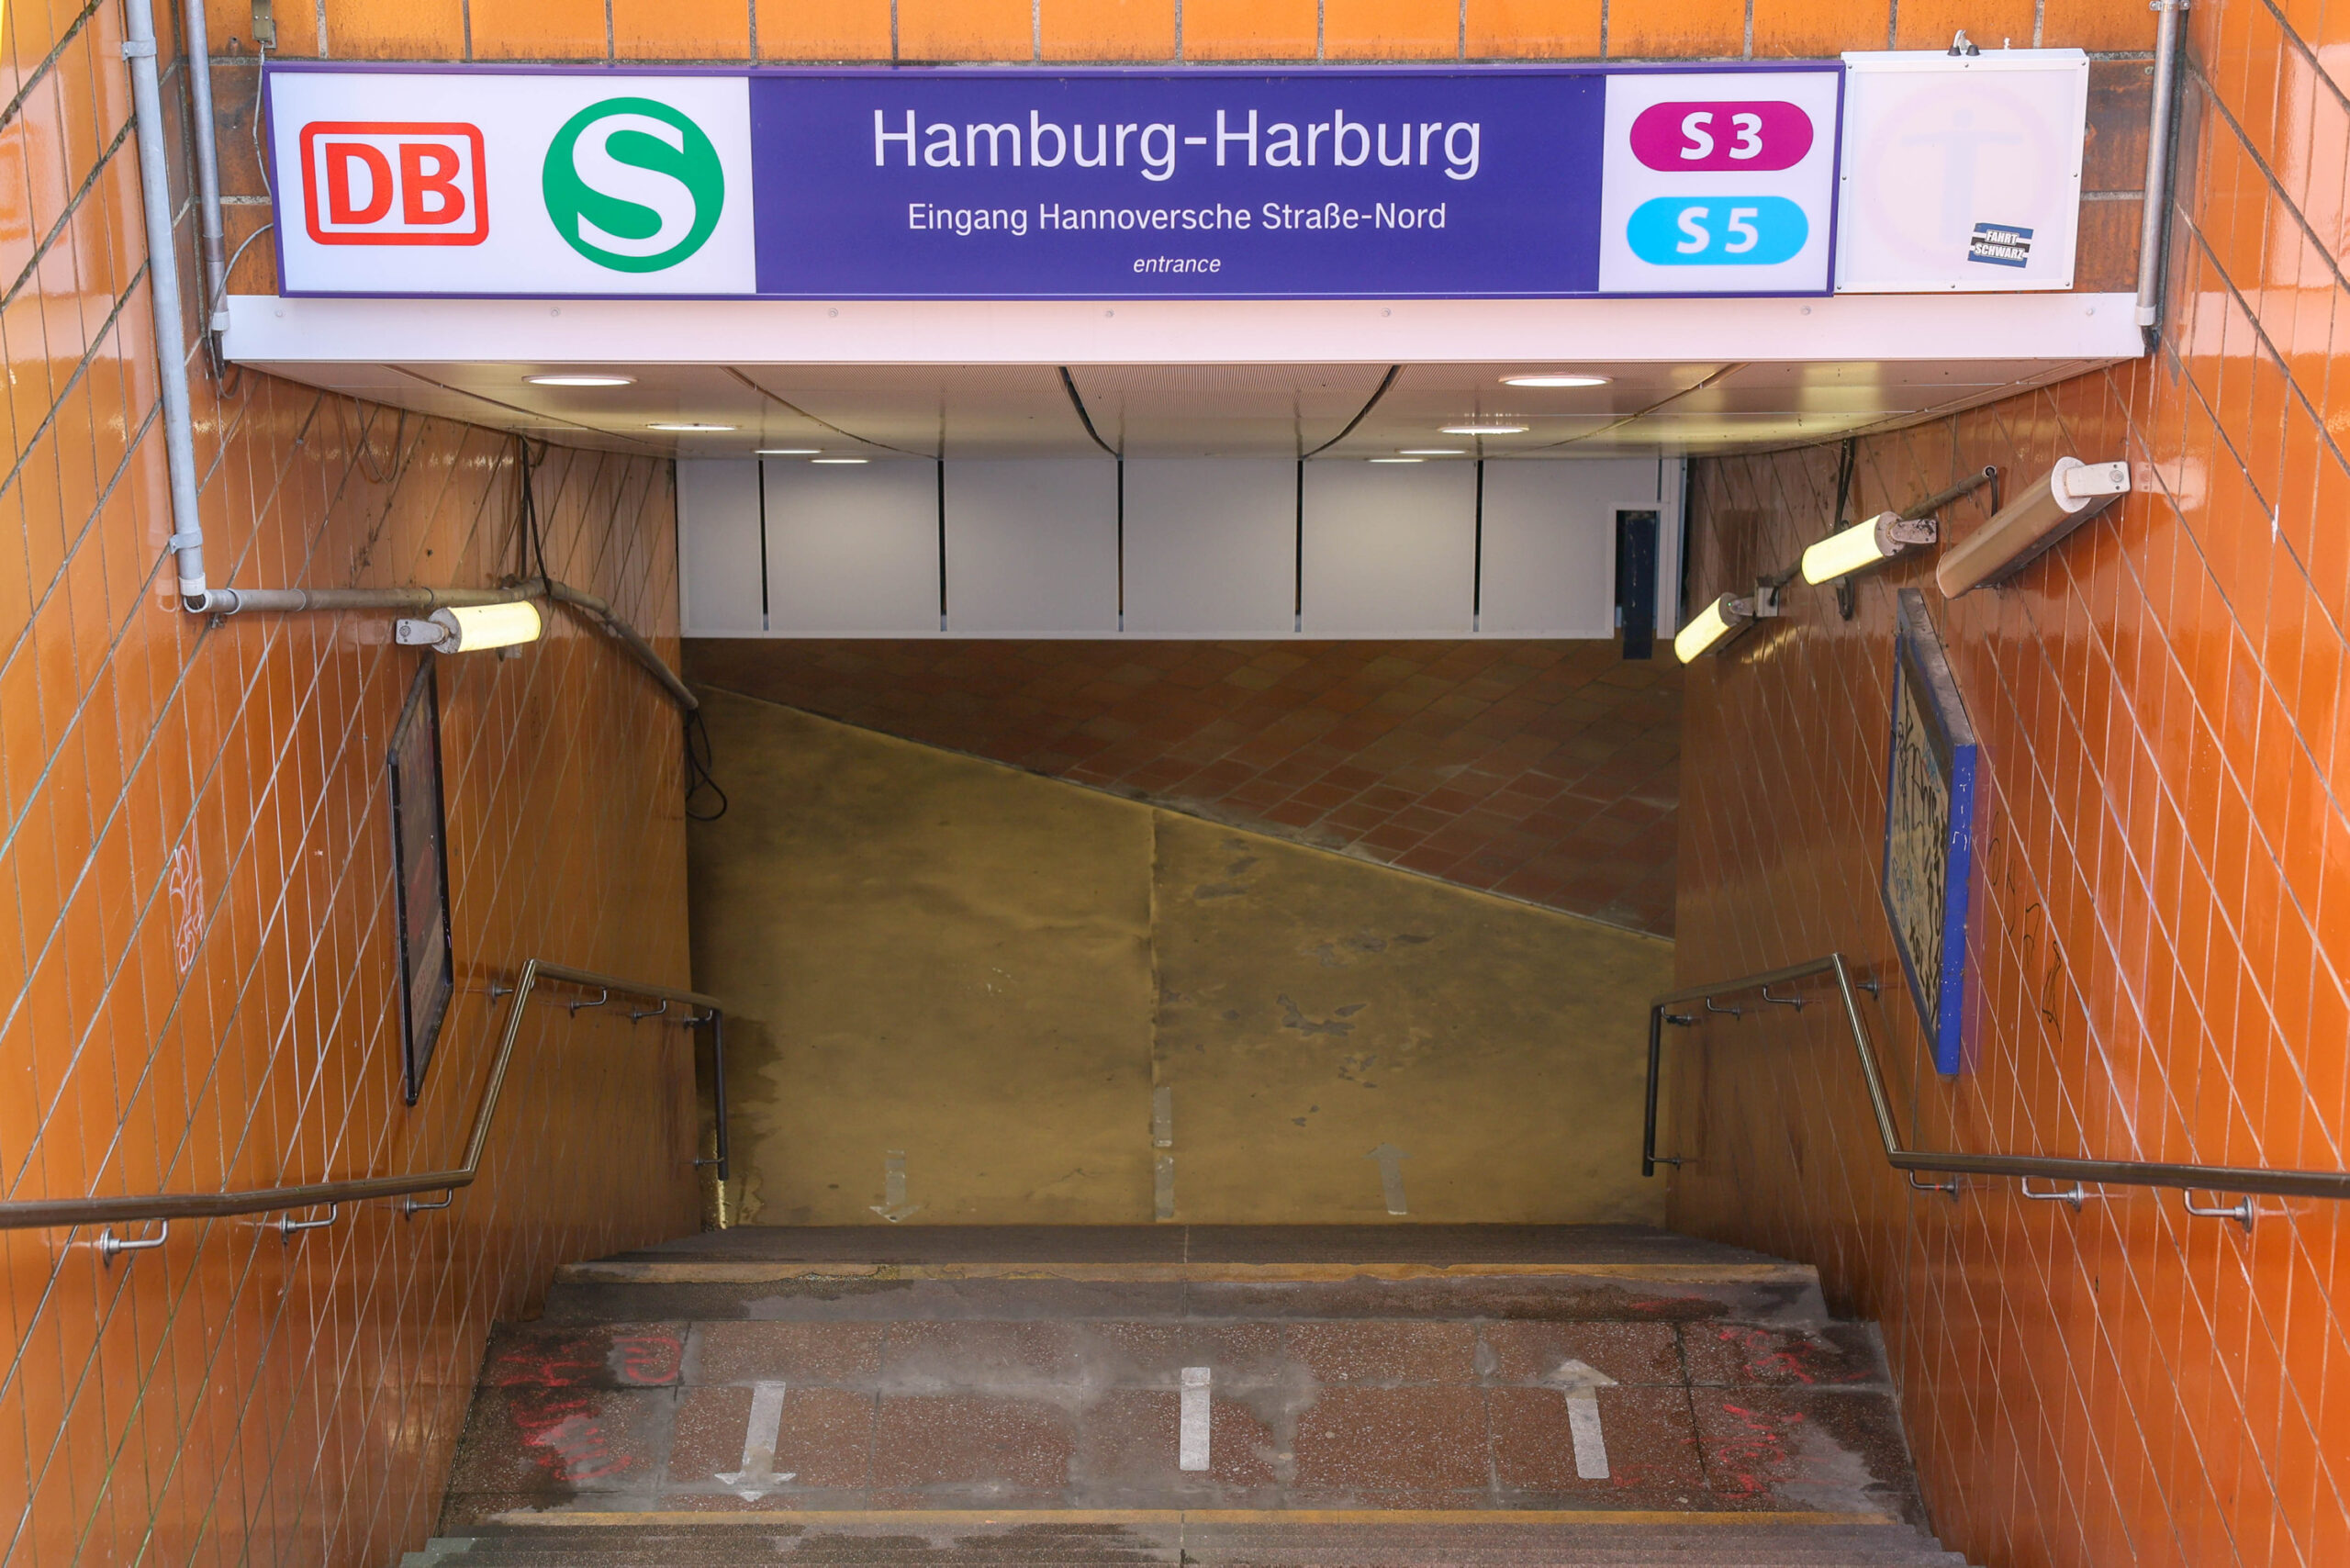 In Harburg hängt schon eine Beschilderung für die S5 – die dort allerdings noch gar nicht fährt.